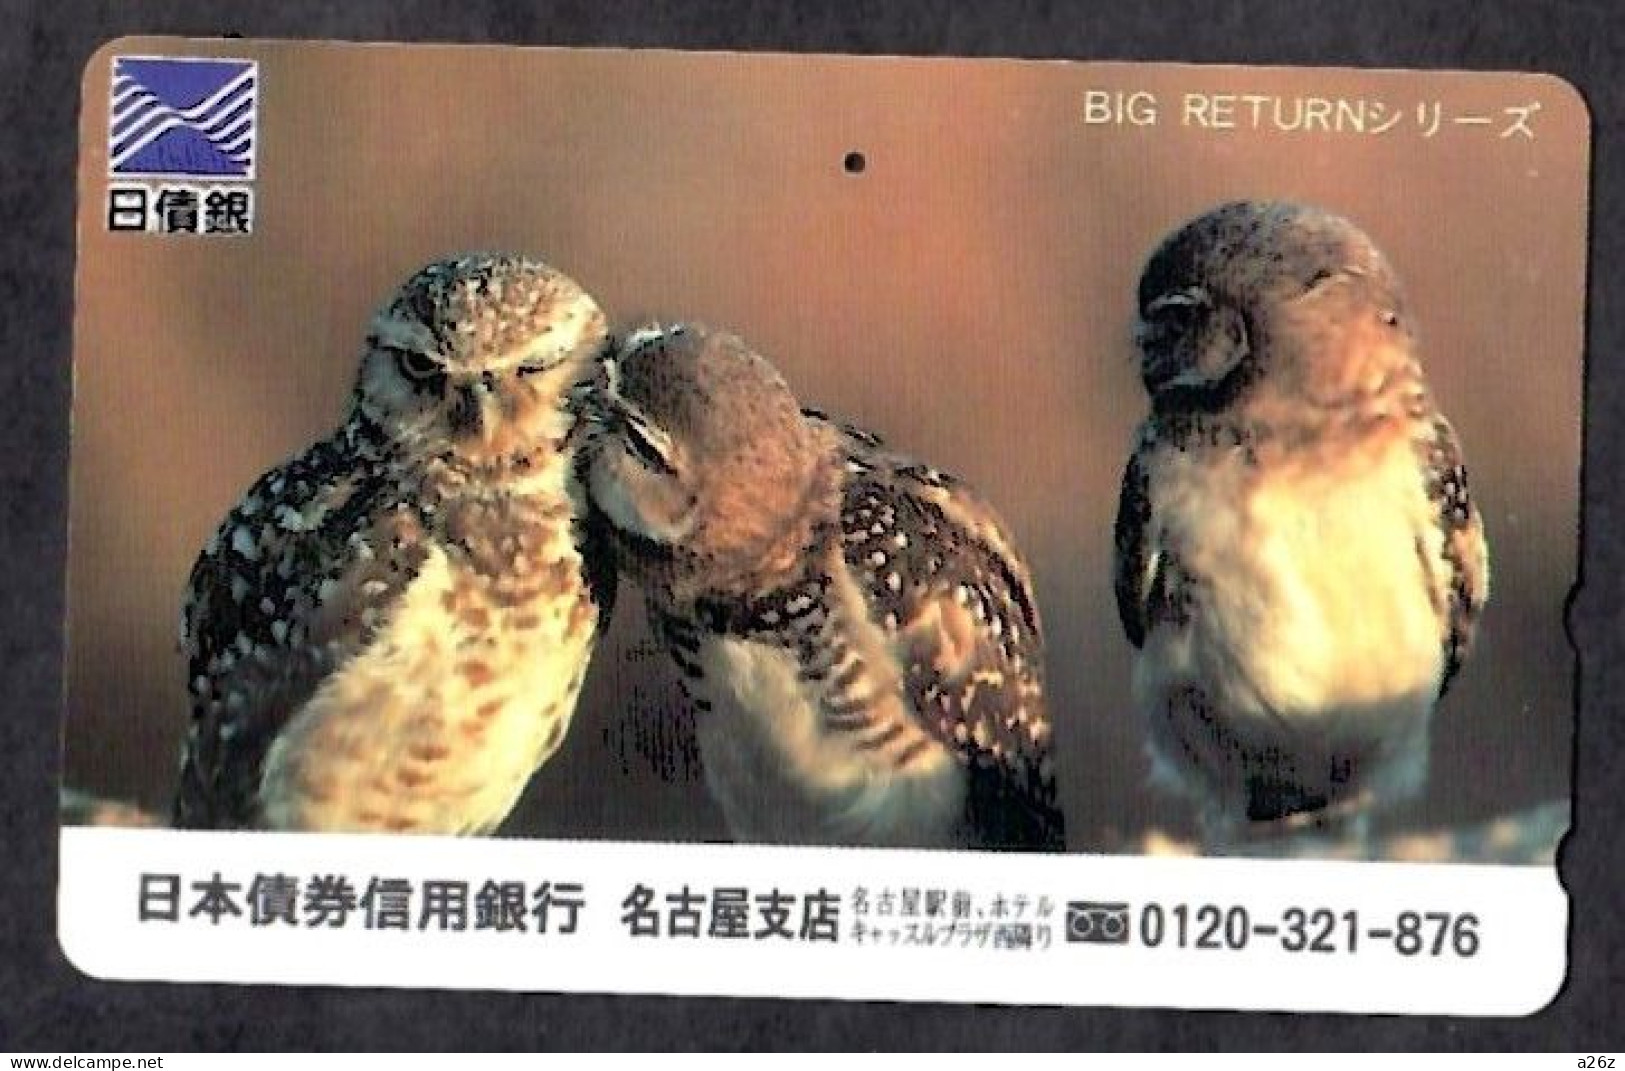 Japan 1V Owls Nippon Credit Bank, Nagoya Branch Advertising Used Card - Uilen